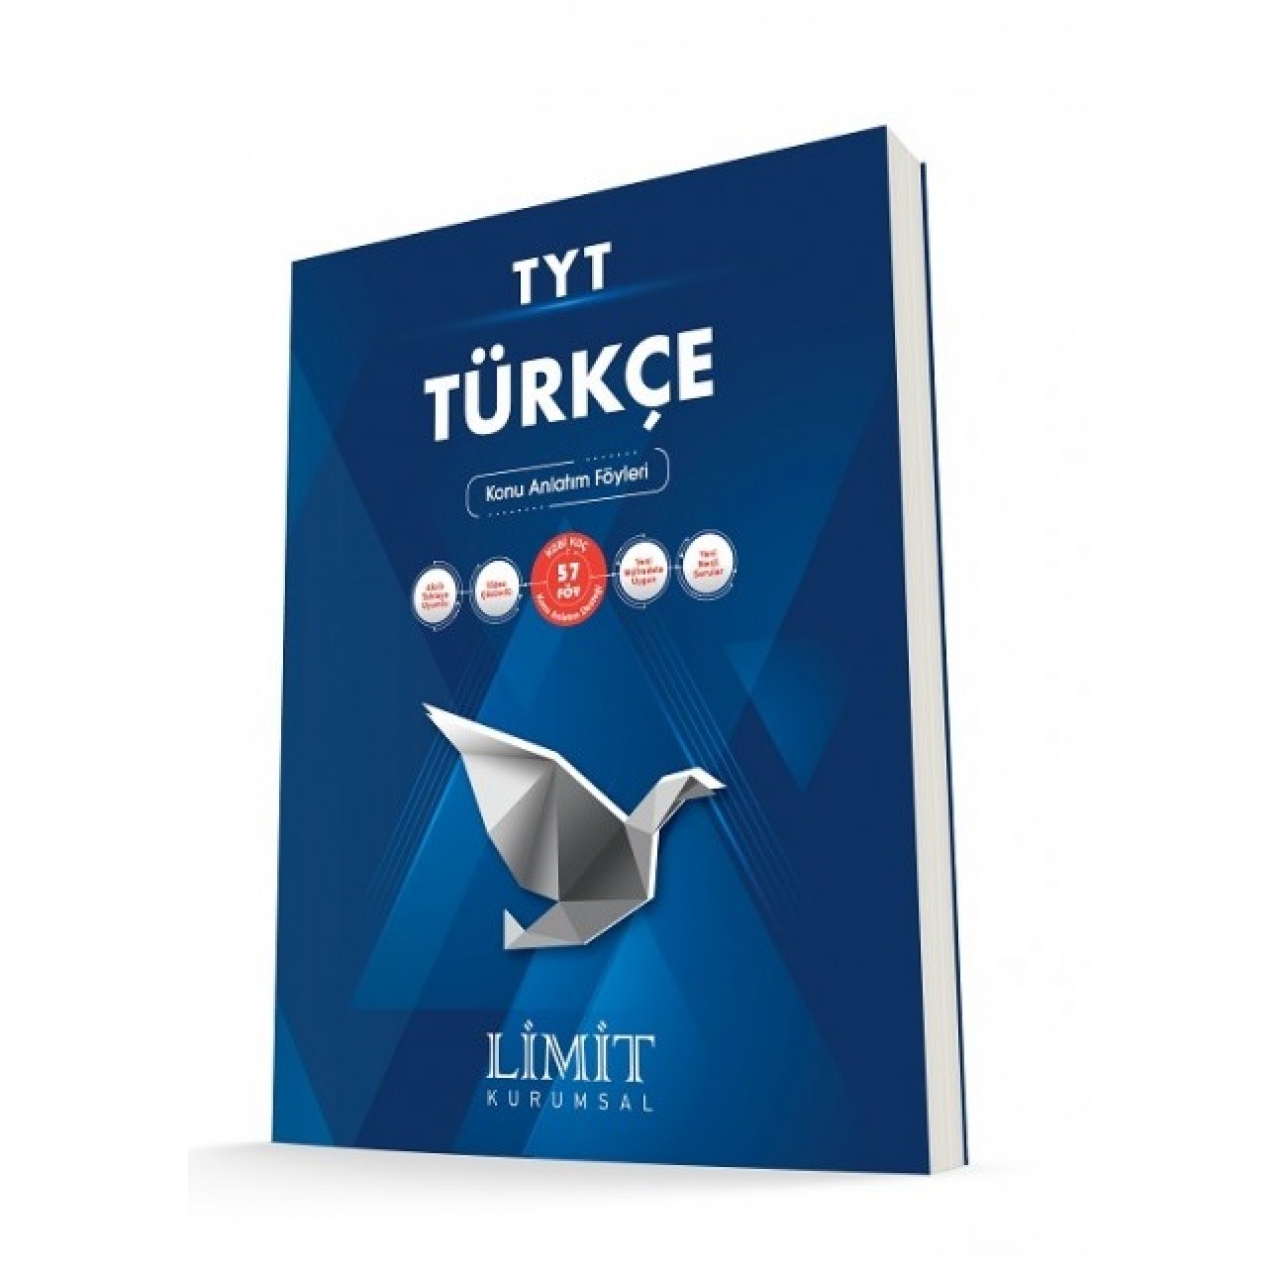 TYT Türkçe Konu Anlatım Föyleri Limit Kurumsal